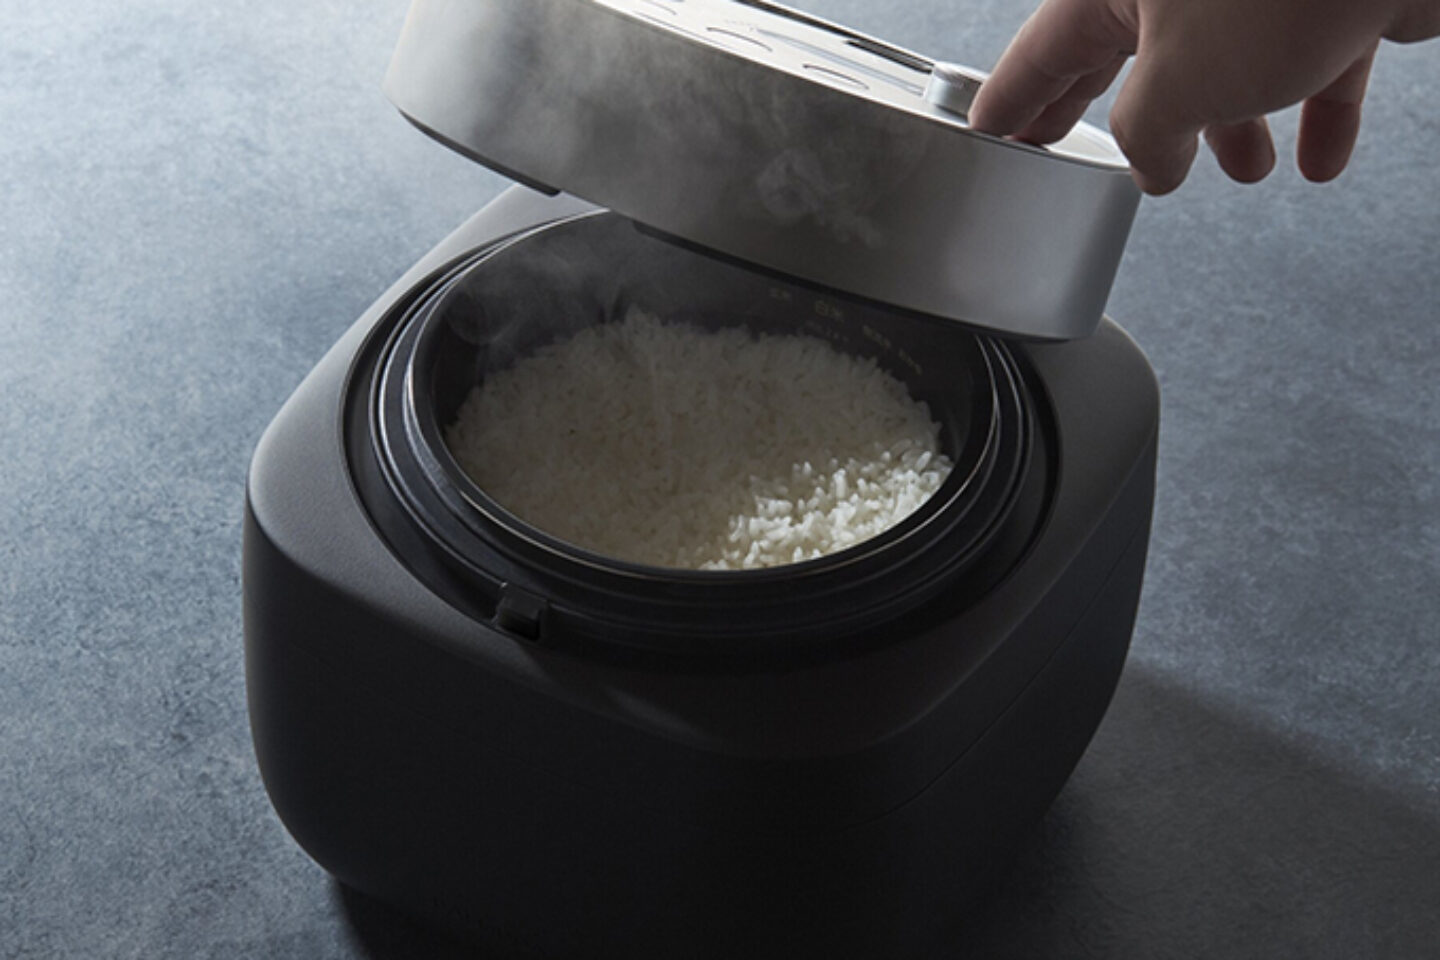 轻松制作美味米饭，BALMUDA 推出创新电饭煲“Gohan”